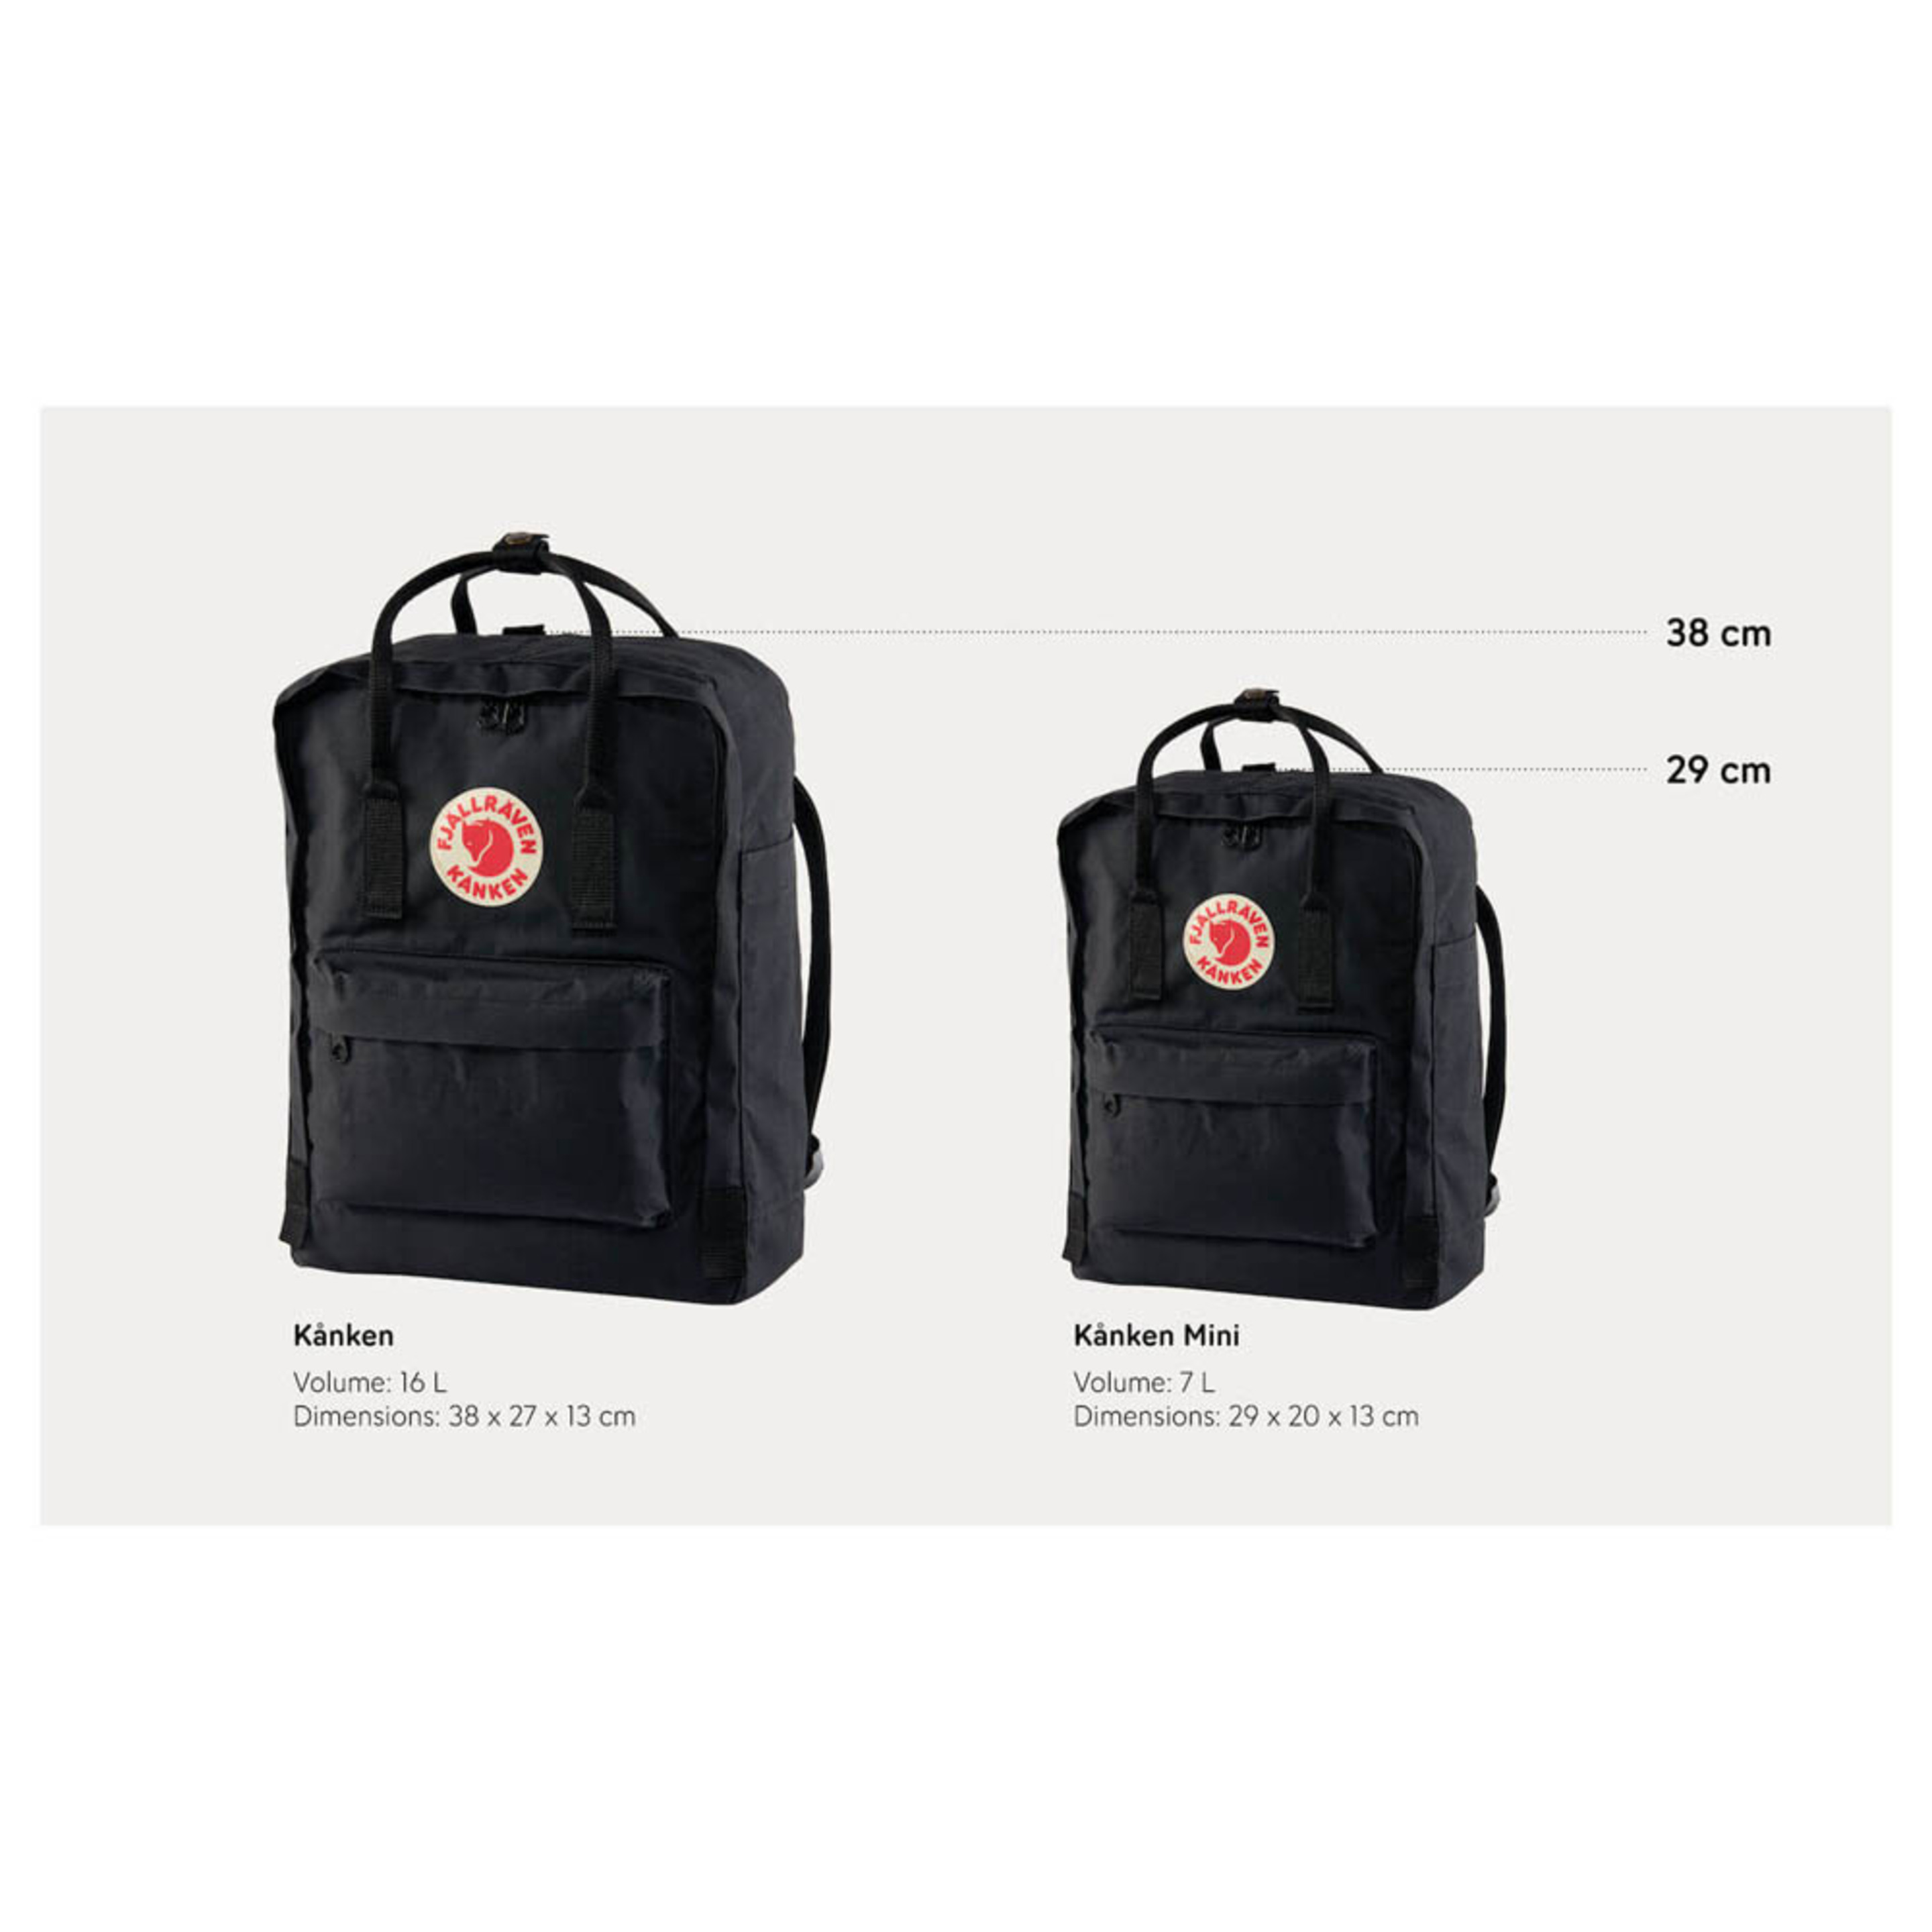 Fjallraven Kanken Sports Backpack, Unisex-adult, Corn, One Size - Multicolor  MKP